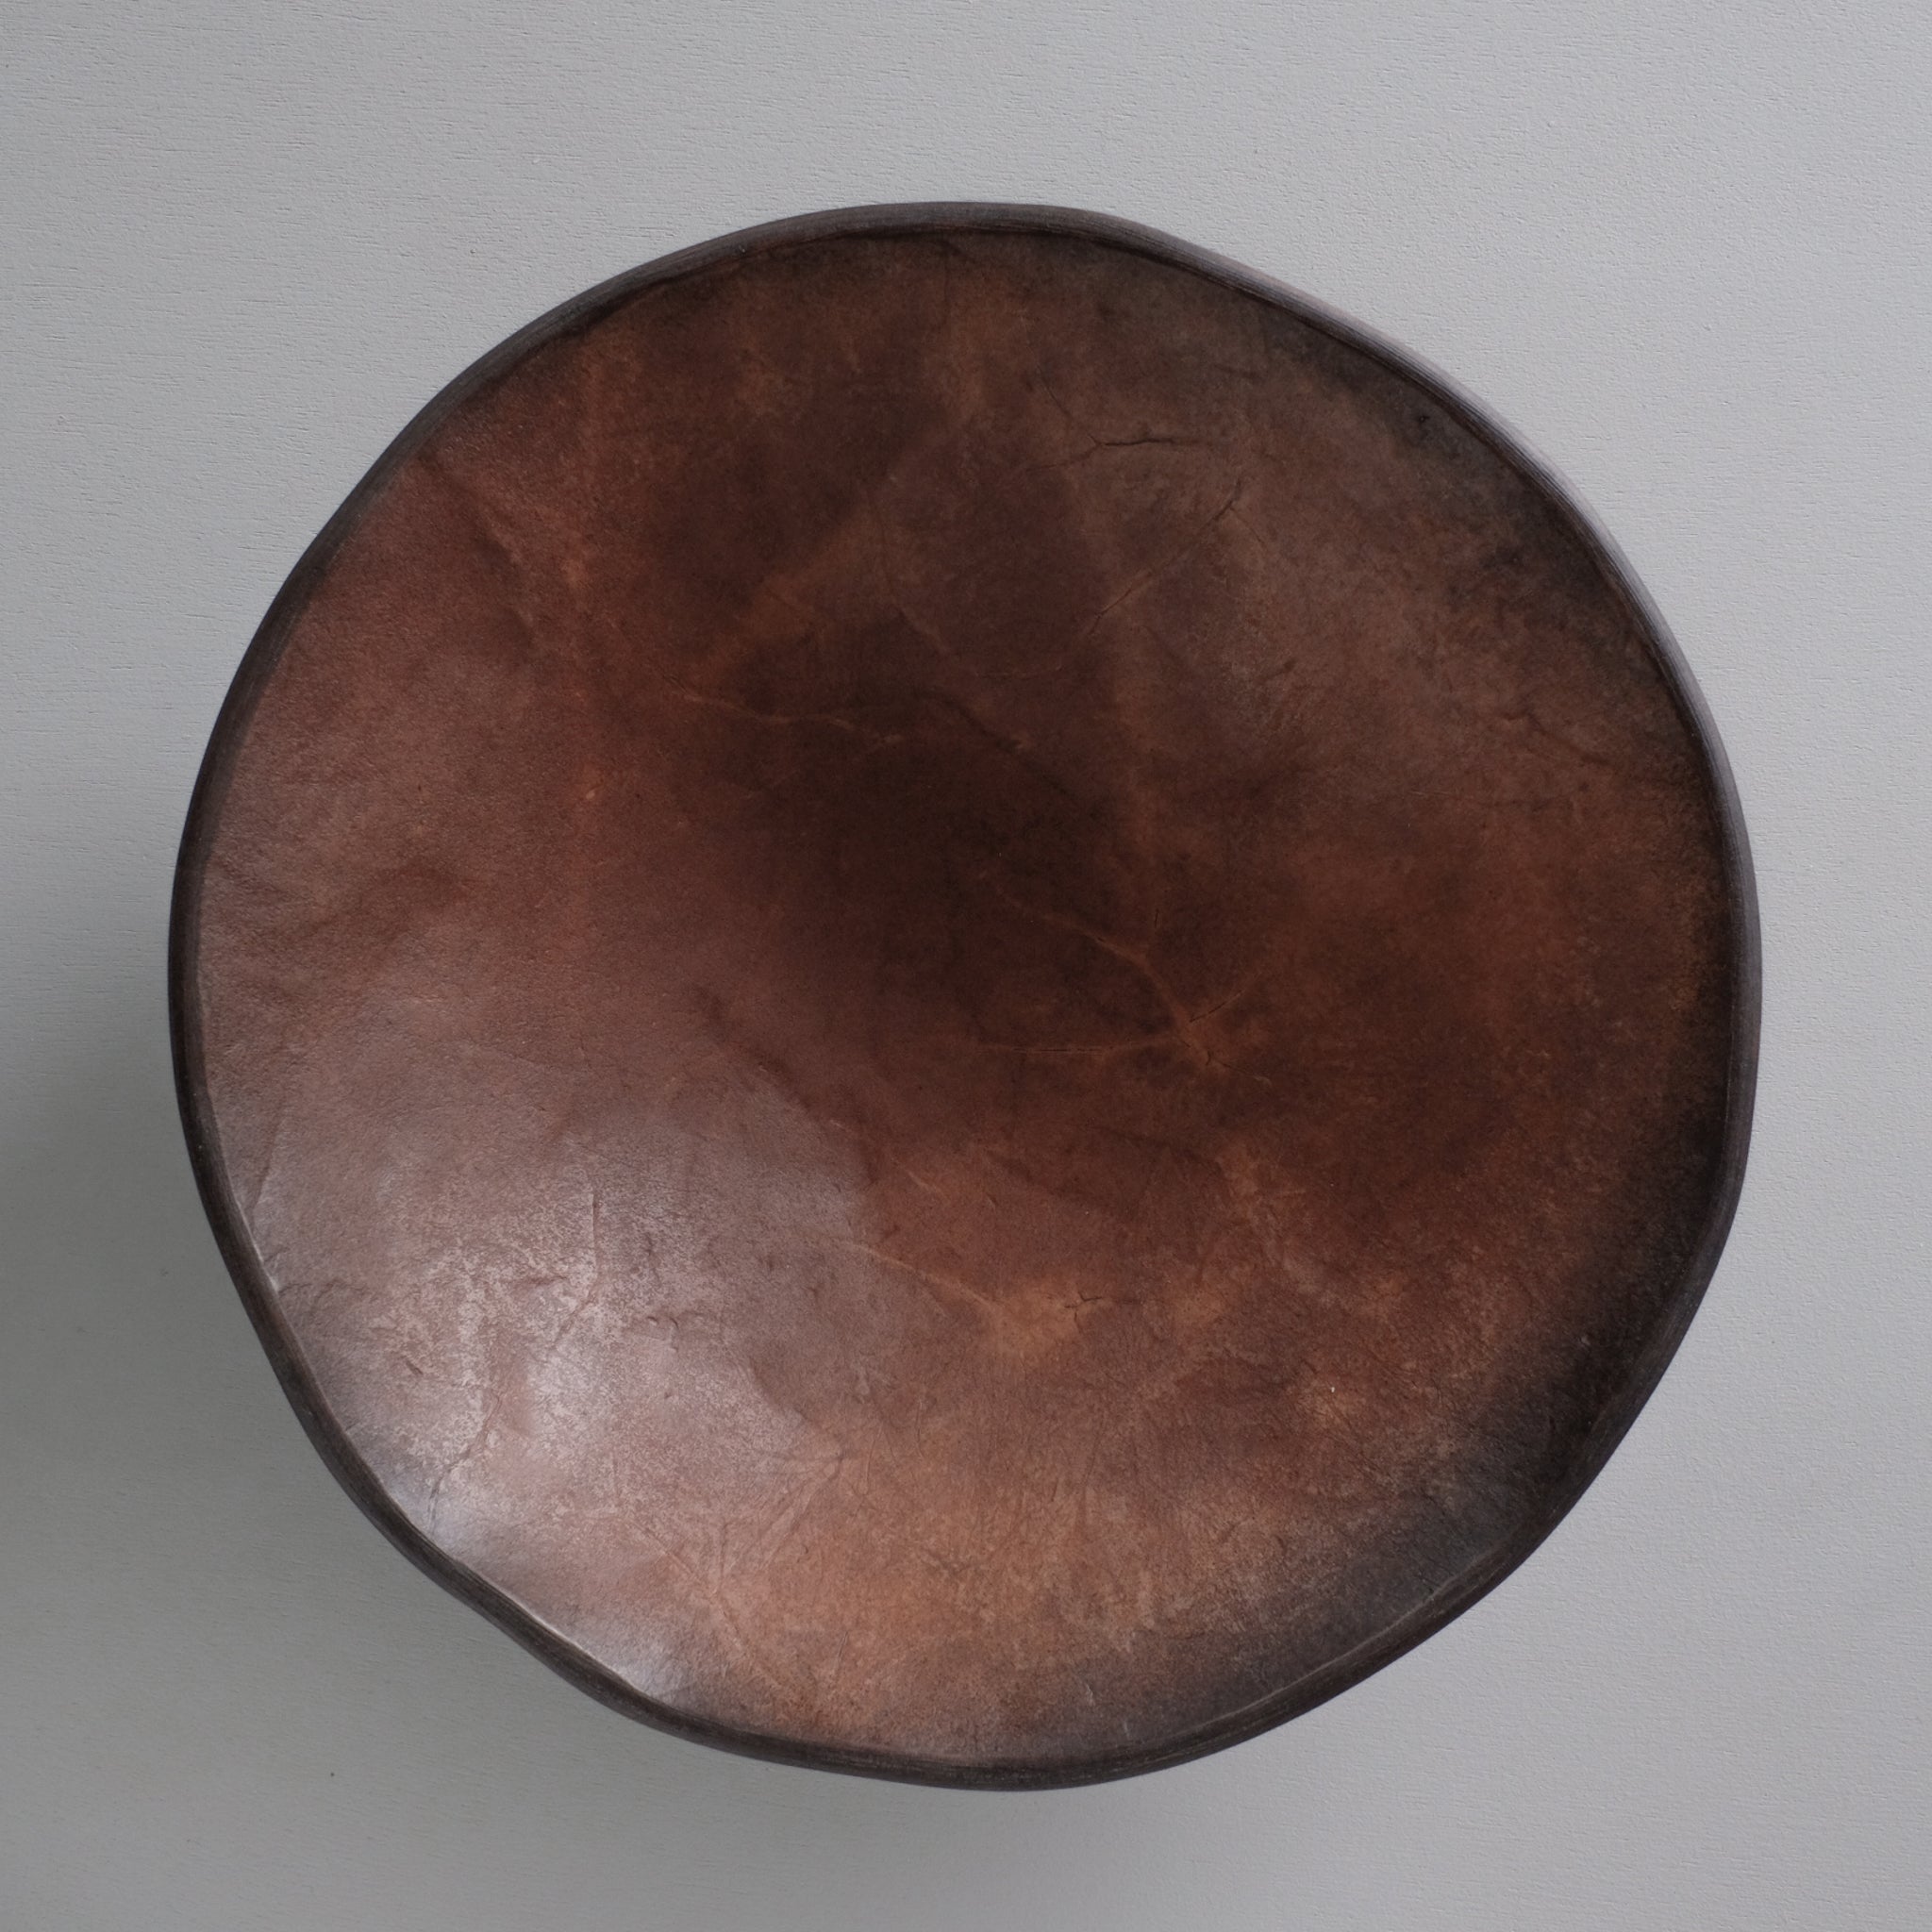 上治良充  ボウル S   Yoshimichi Joji  Leather bowl S-size